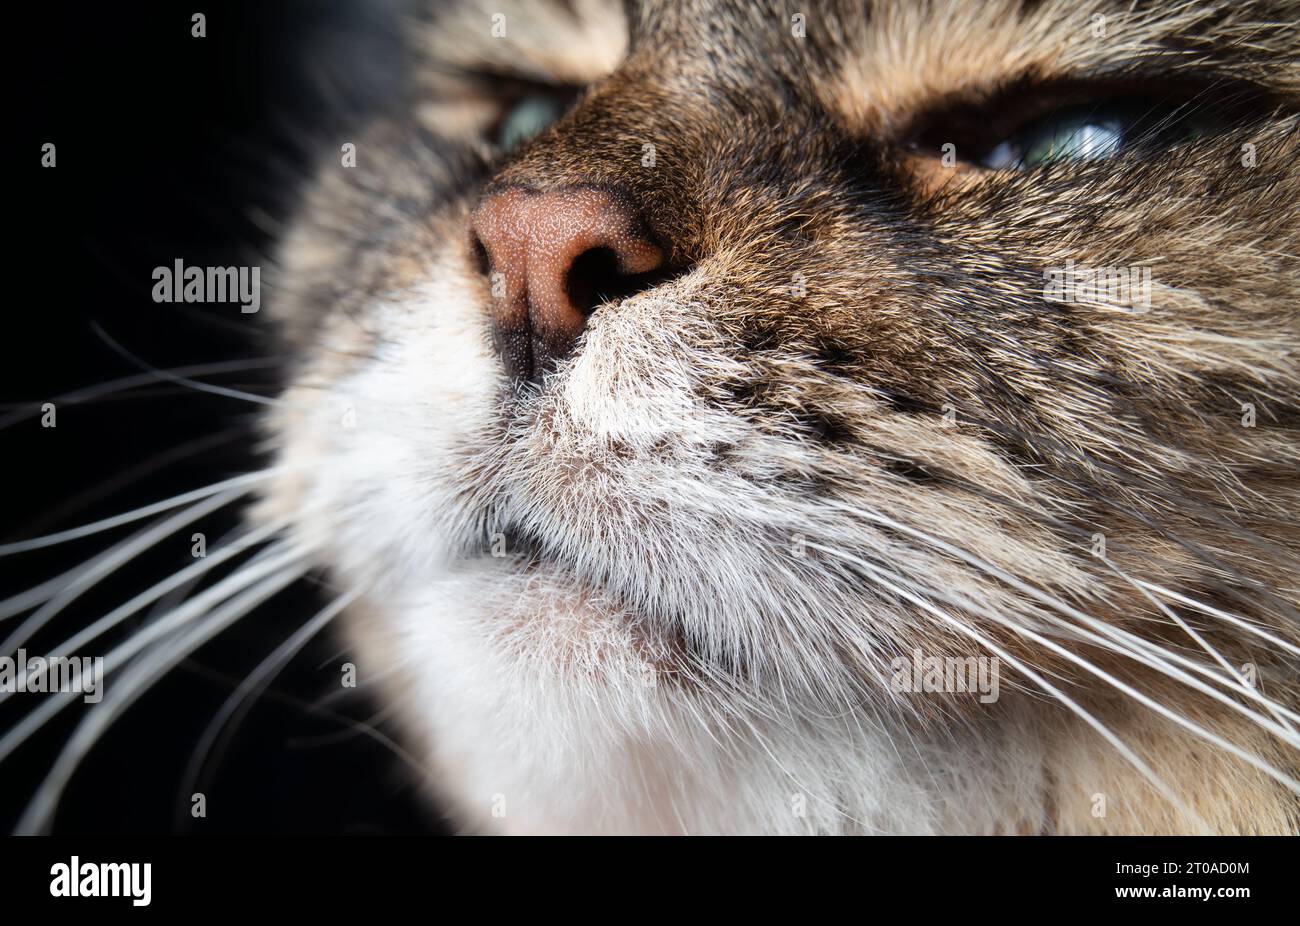 Primo piano del naso del gatto su sfondo nero. La testa del gatto Tabby è leggermente inclinata verso l'alto, puzza o annusare qualcosa. Viso gatto anziano femmina a capelli lunghi. Selez Foto Stock